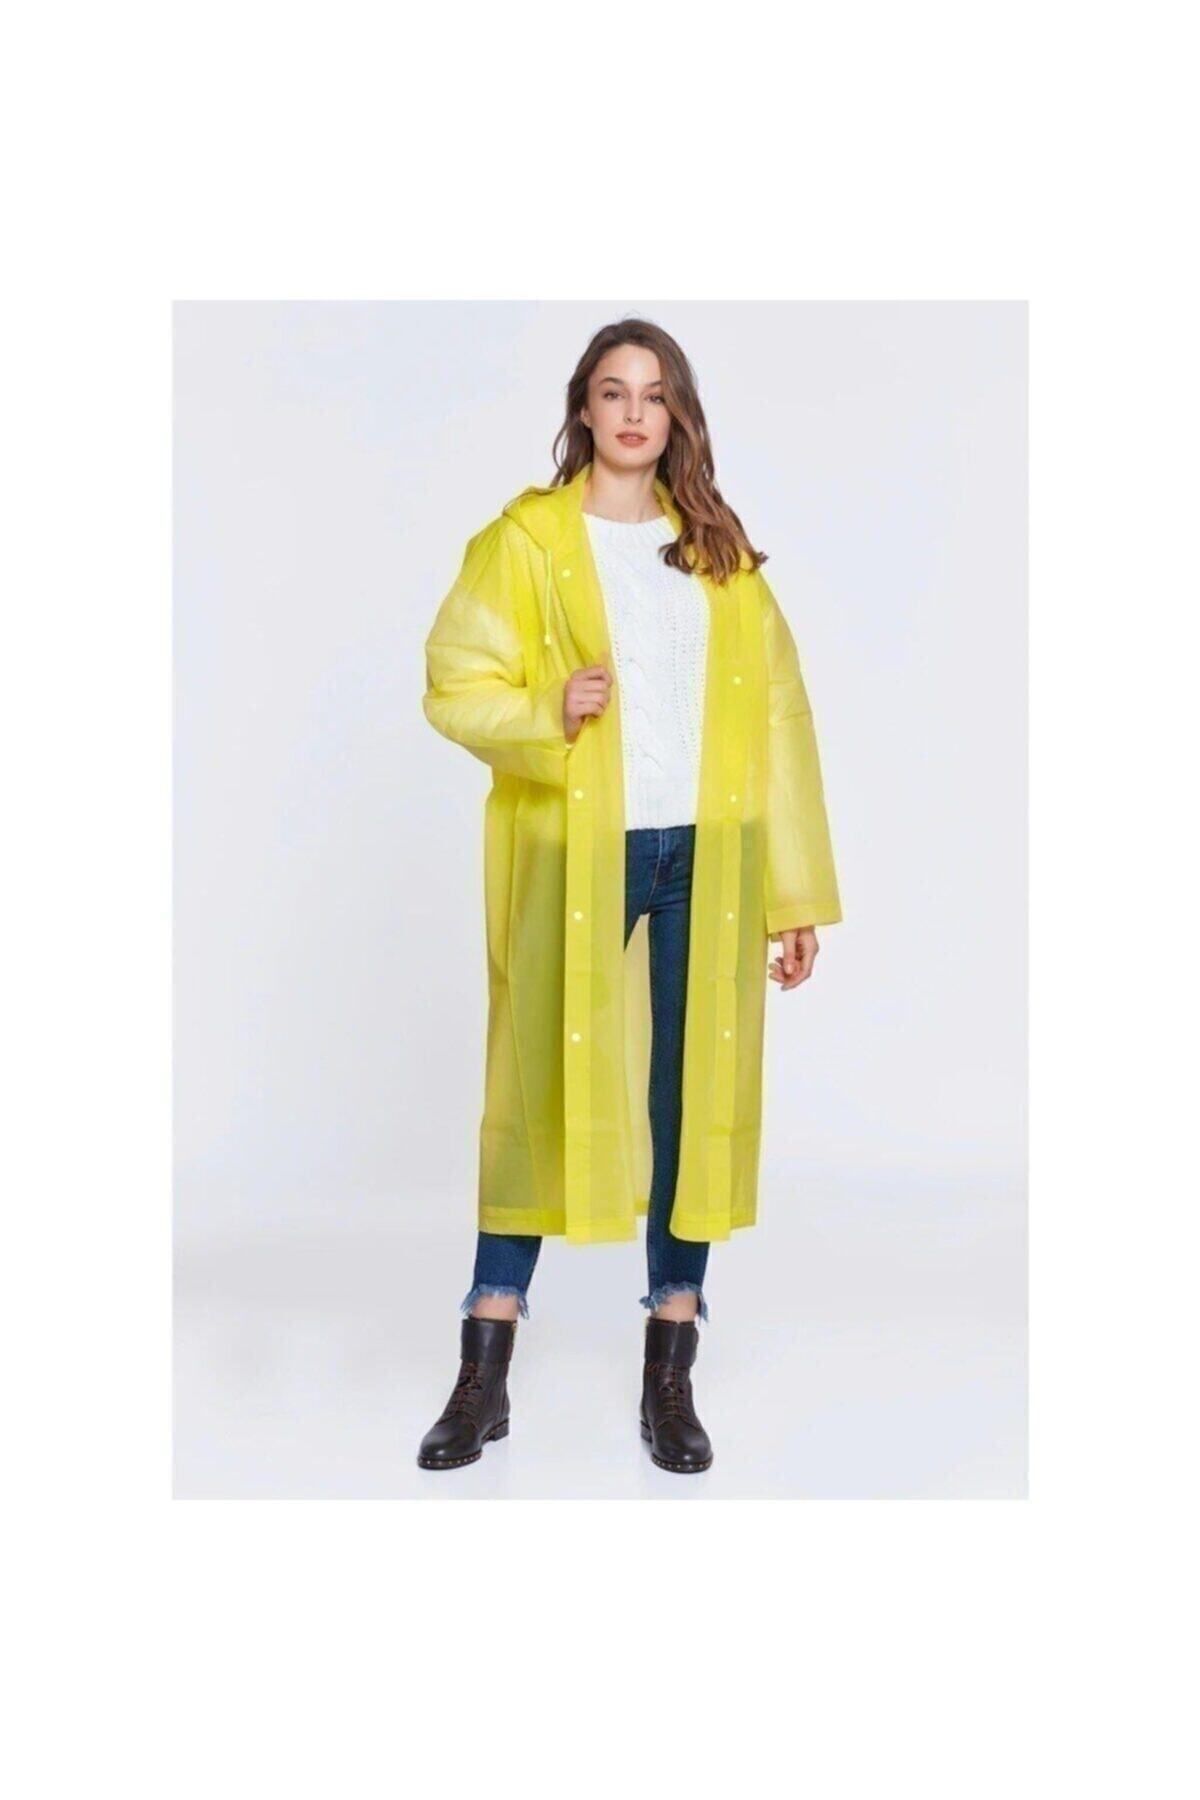 İstoc Trend Tek Kullanımlık Kullan At Yağmurluk, Şeffaf Su Geçirmez Şık Kıyafetüstü Yağmurluk Pembe Sarı Mor